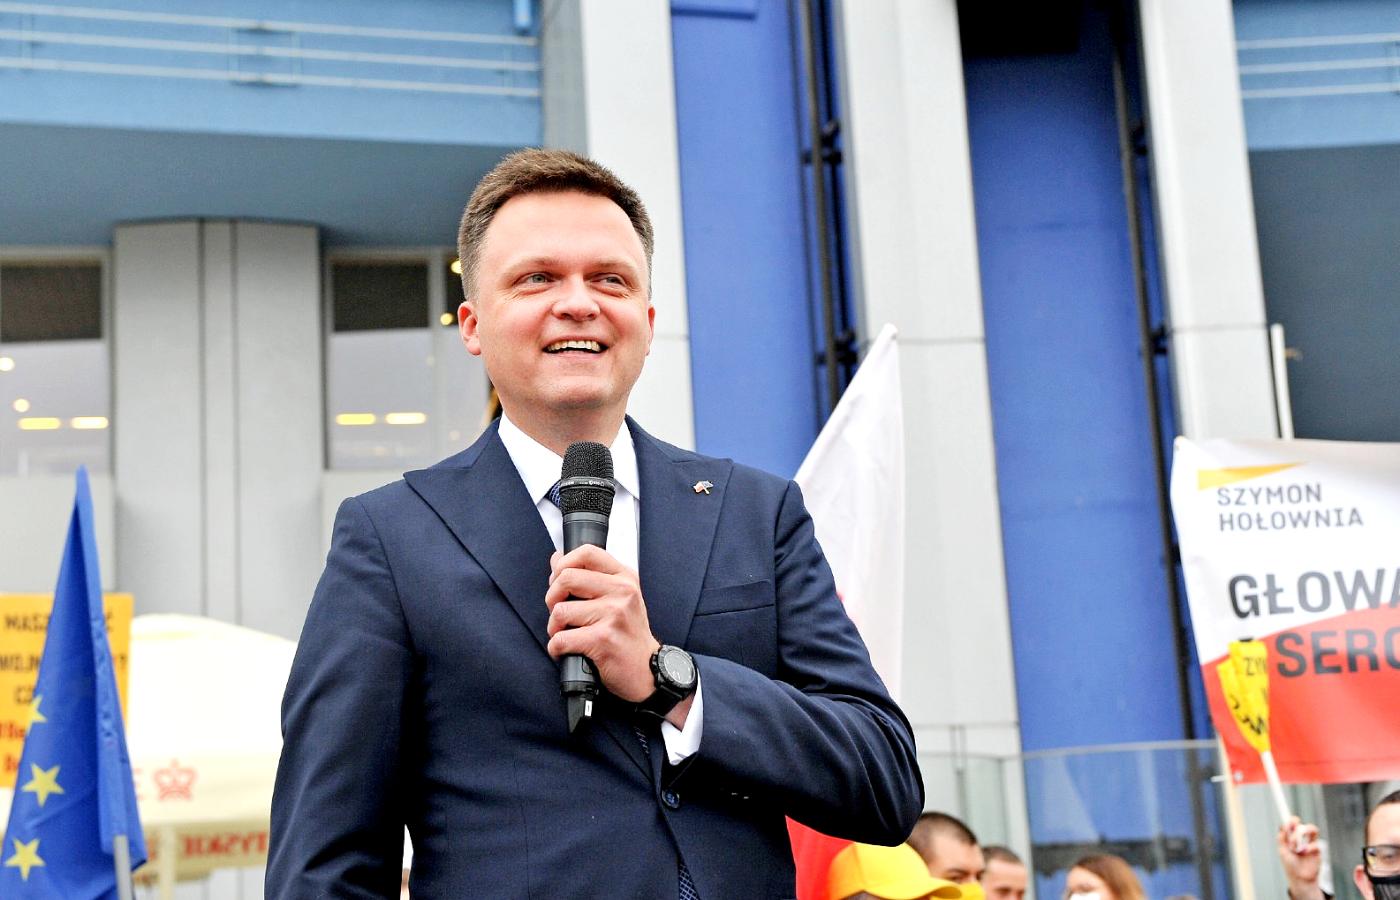 Szymon Hołownia na wiecu przedwyborczym w Katowicach